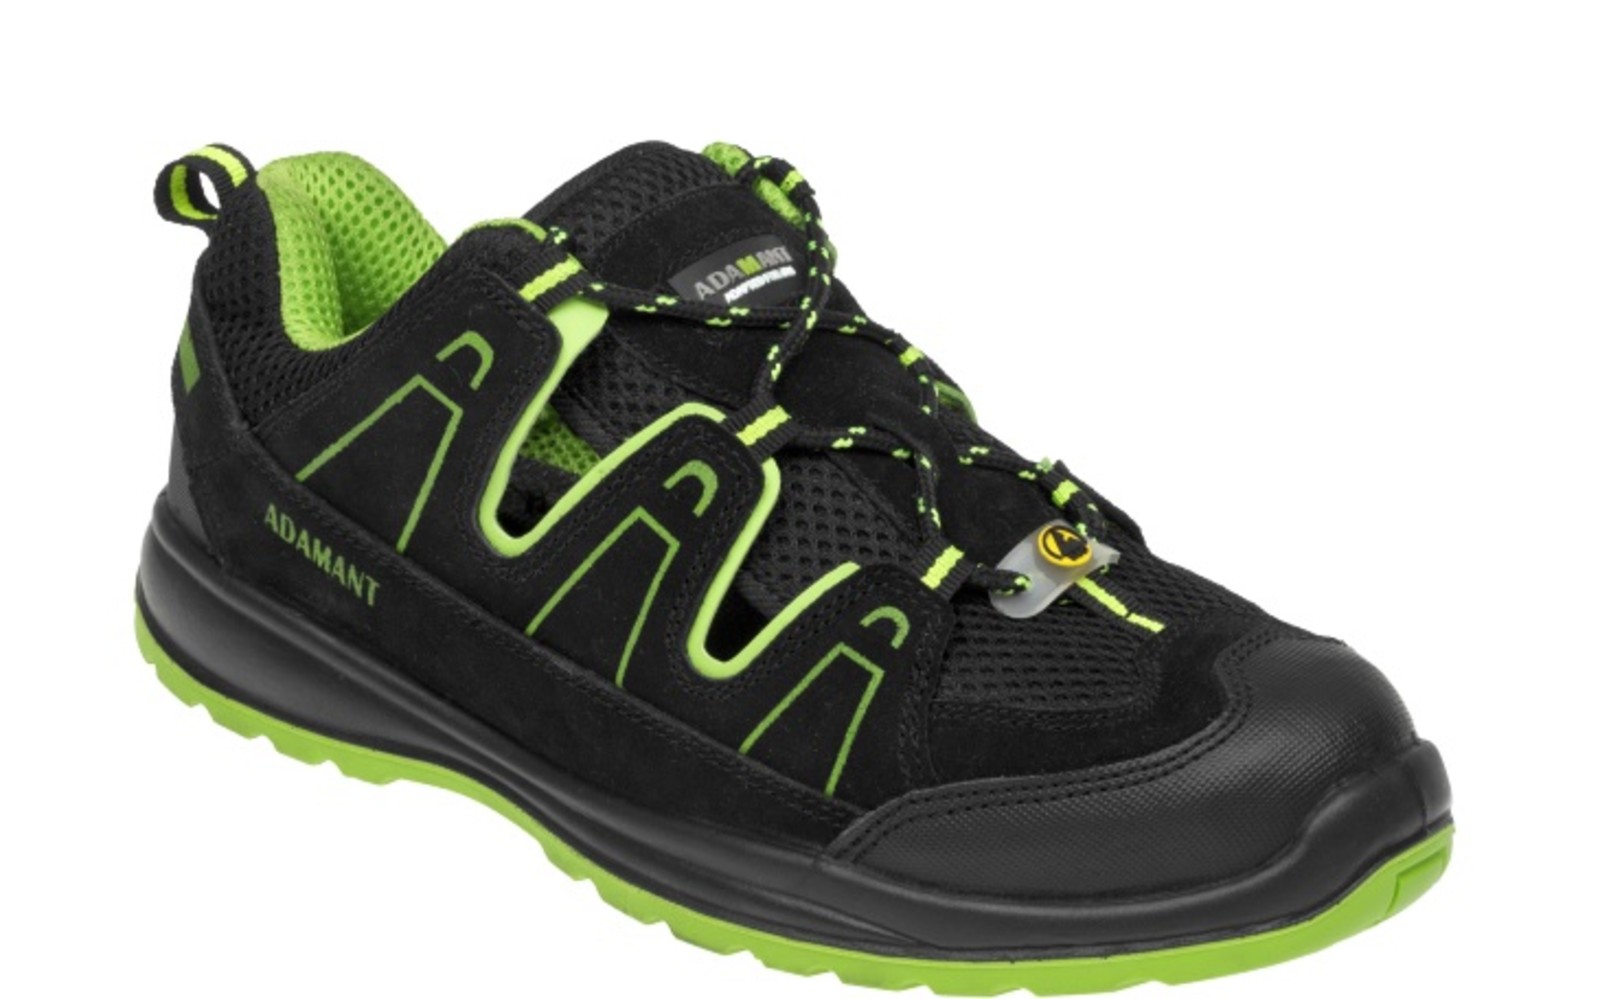 Bezpečnostné sandále Adamant Alegro S1 ESD - veľkosť: 41, farba: čierna/zelená